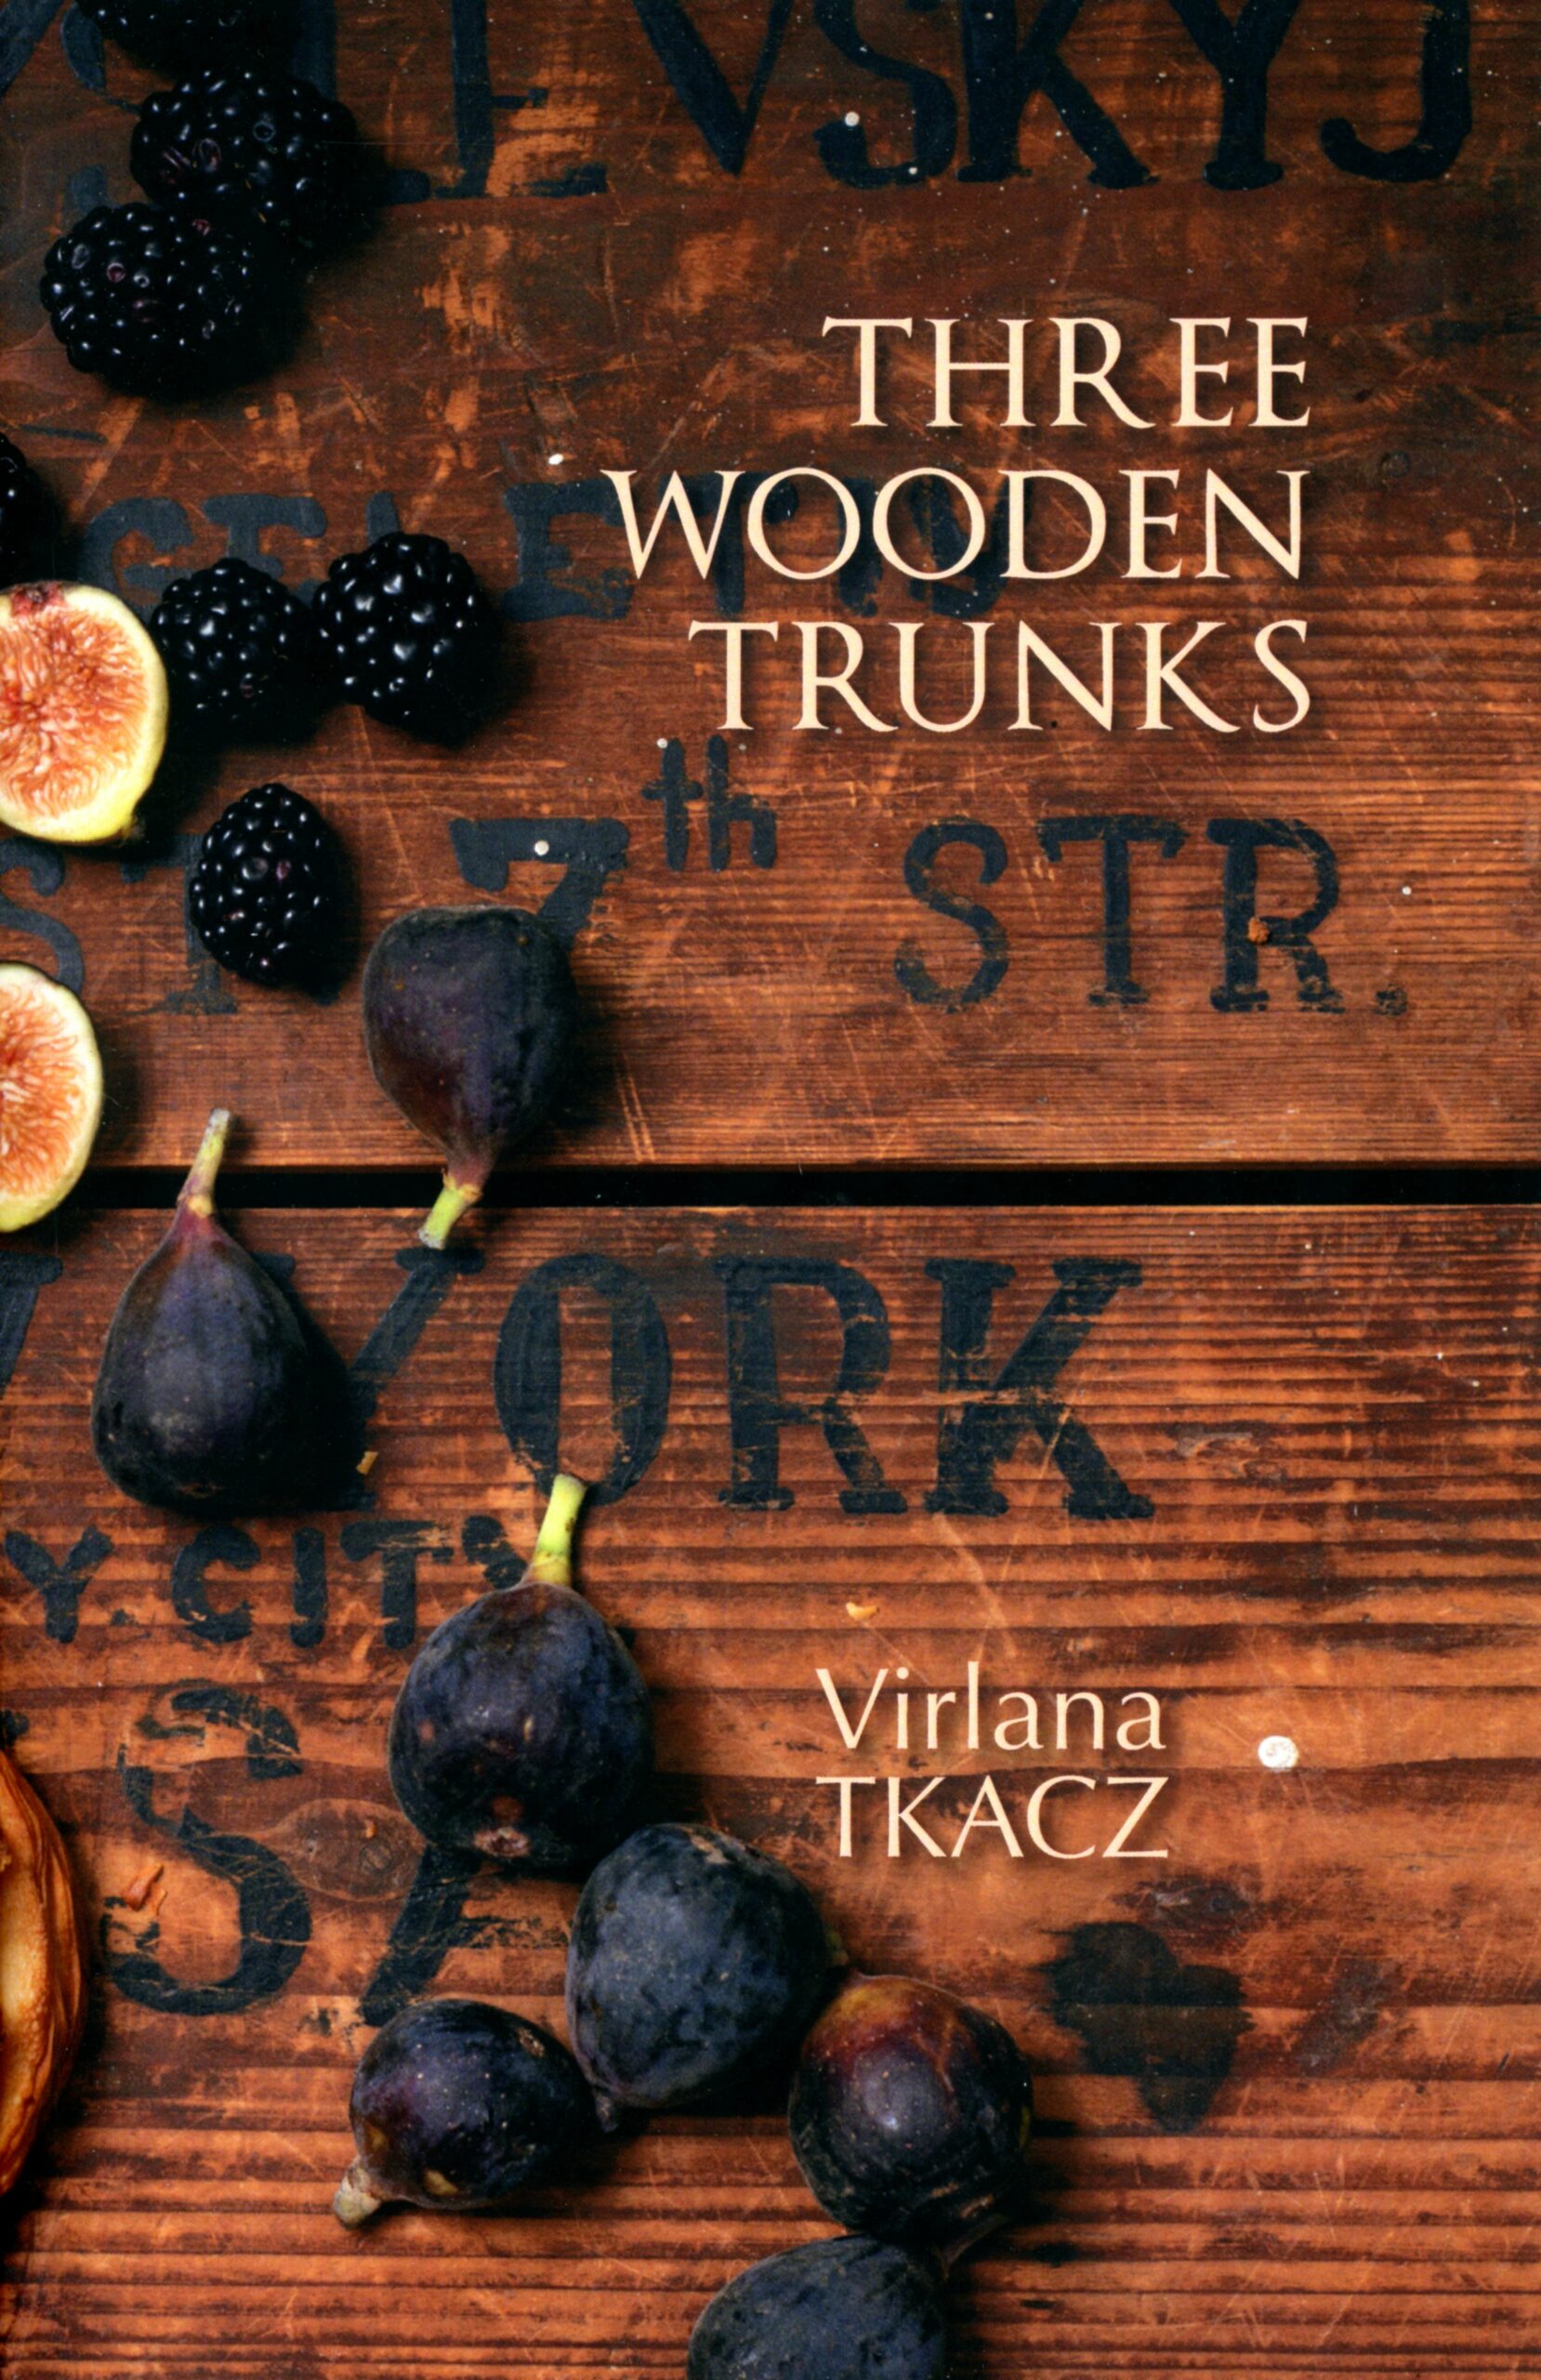 Virlana Tkacz. "Three Wooden Trunks" Cover